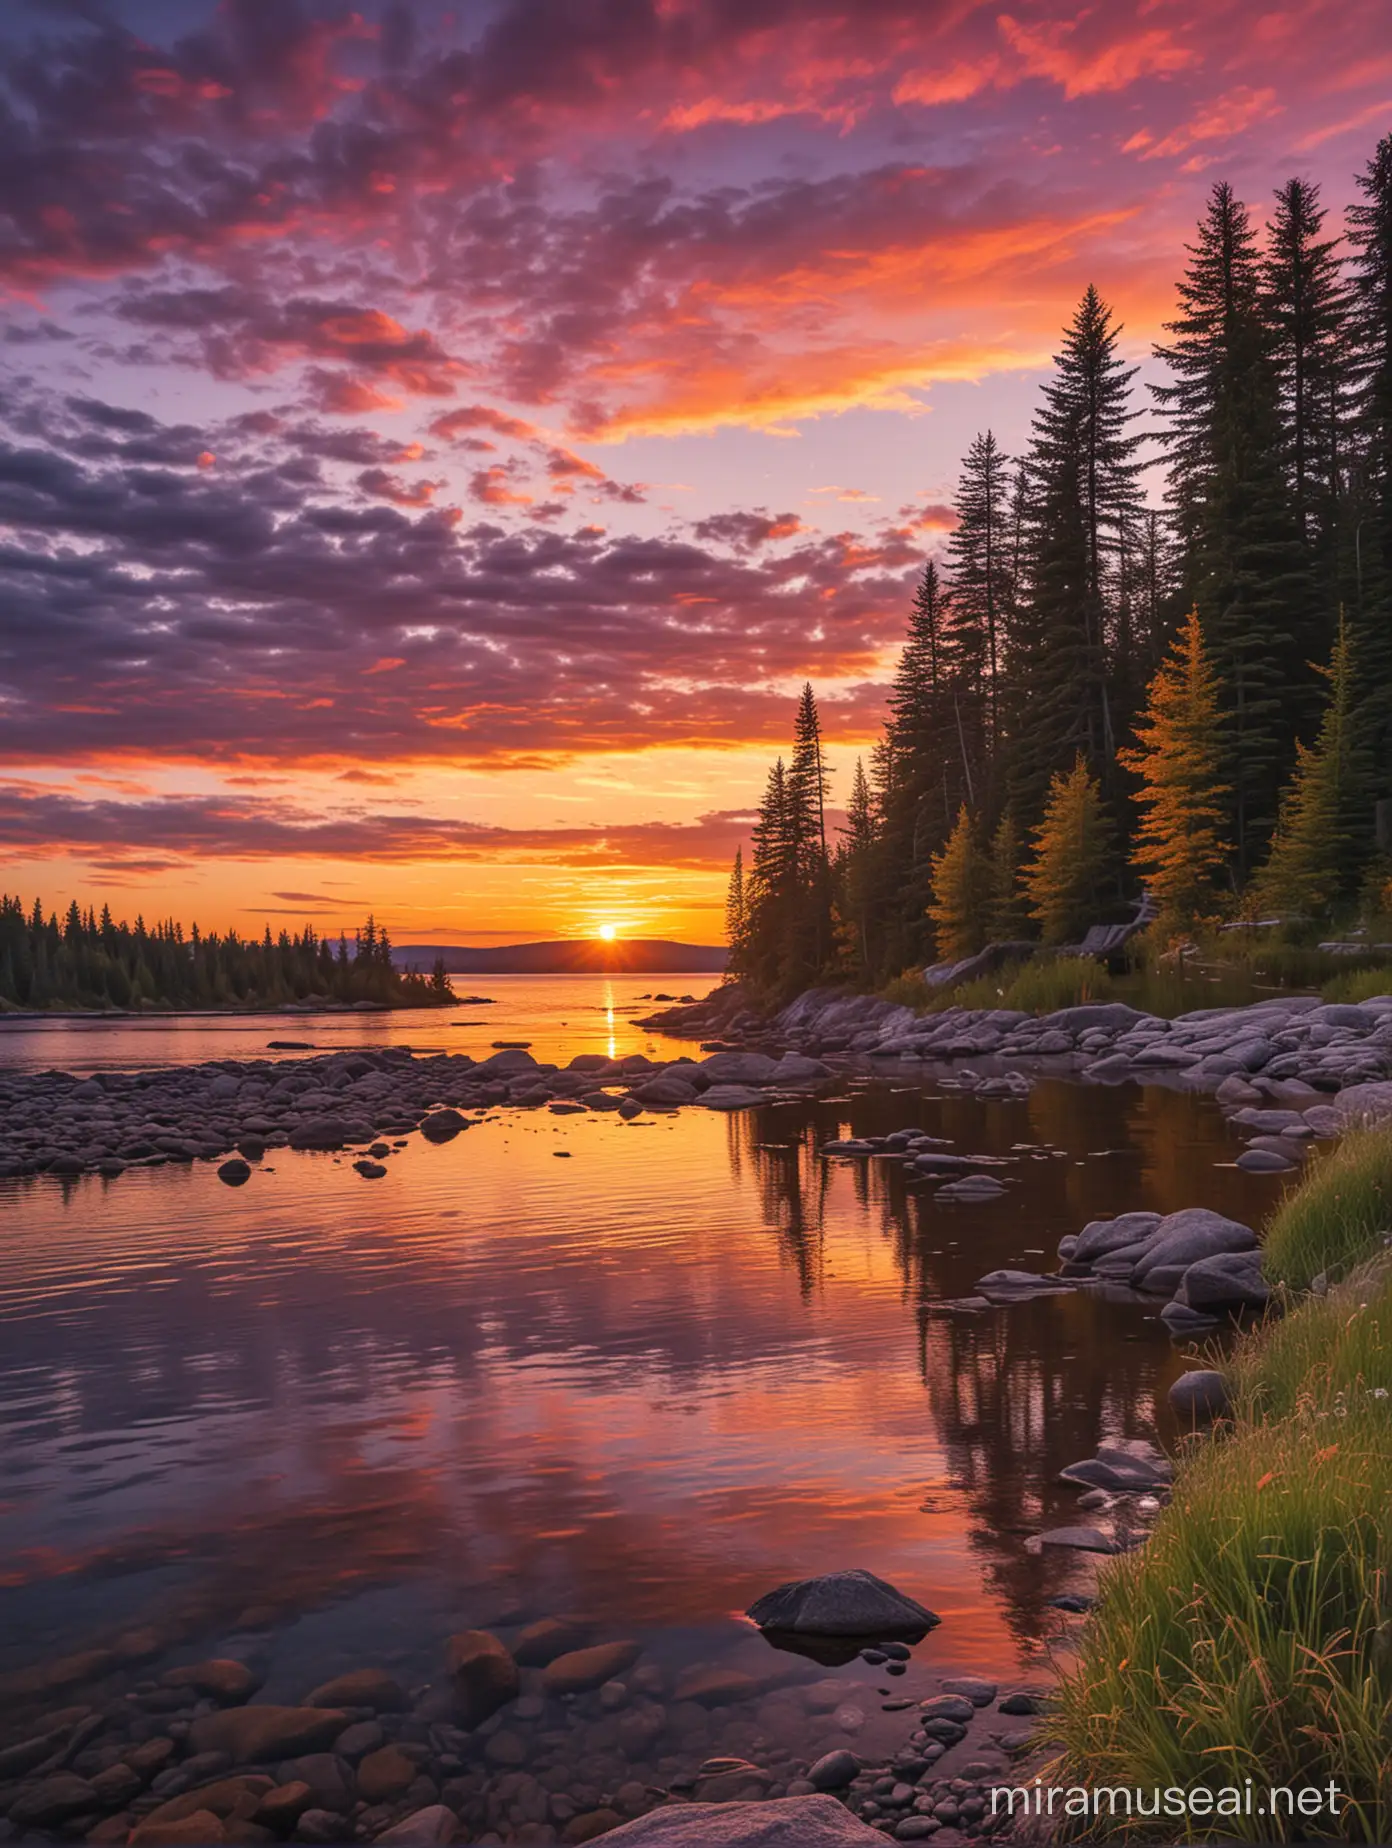 Canadian Sunset Serenity with Nostalgic Wonder